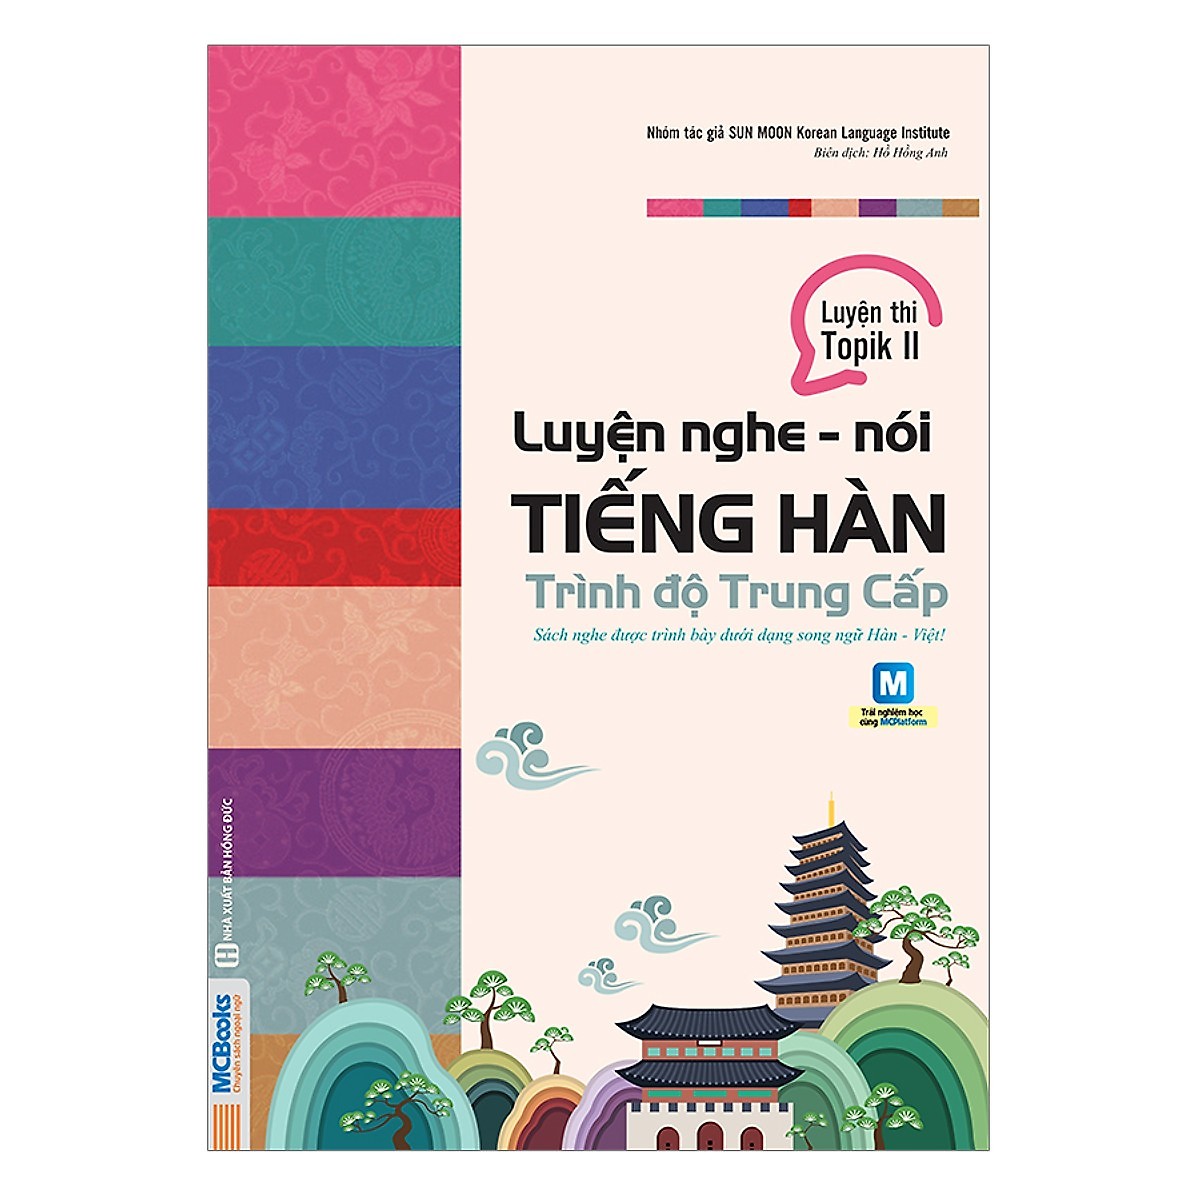 Combo Luyện Nghe Tiếng Hàn Dành Cho Người Mới Bắt Đầu và Trình Độ Trung Cấp ( Tặng Kèm Bookmark)